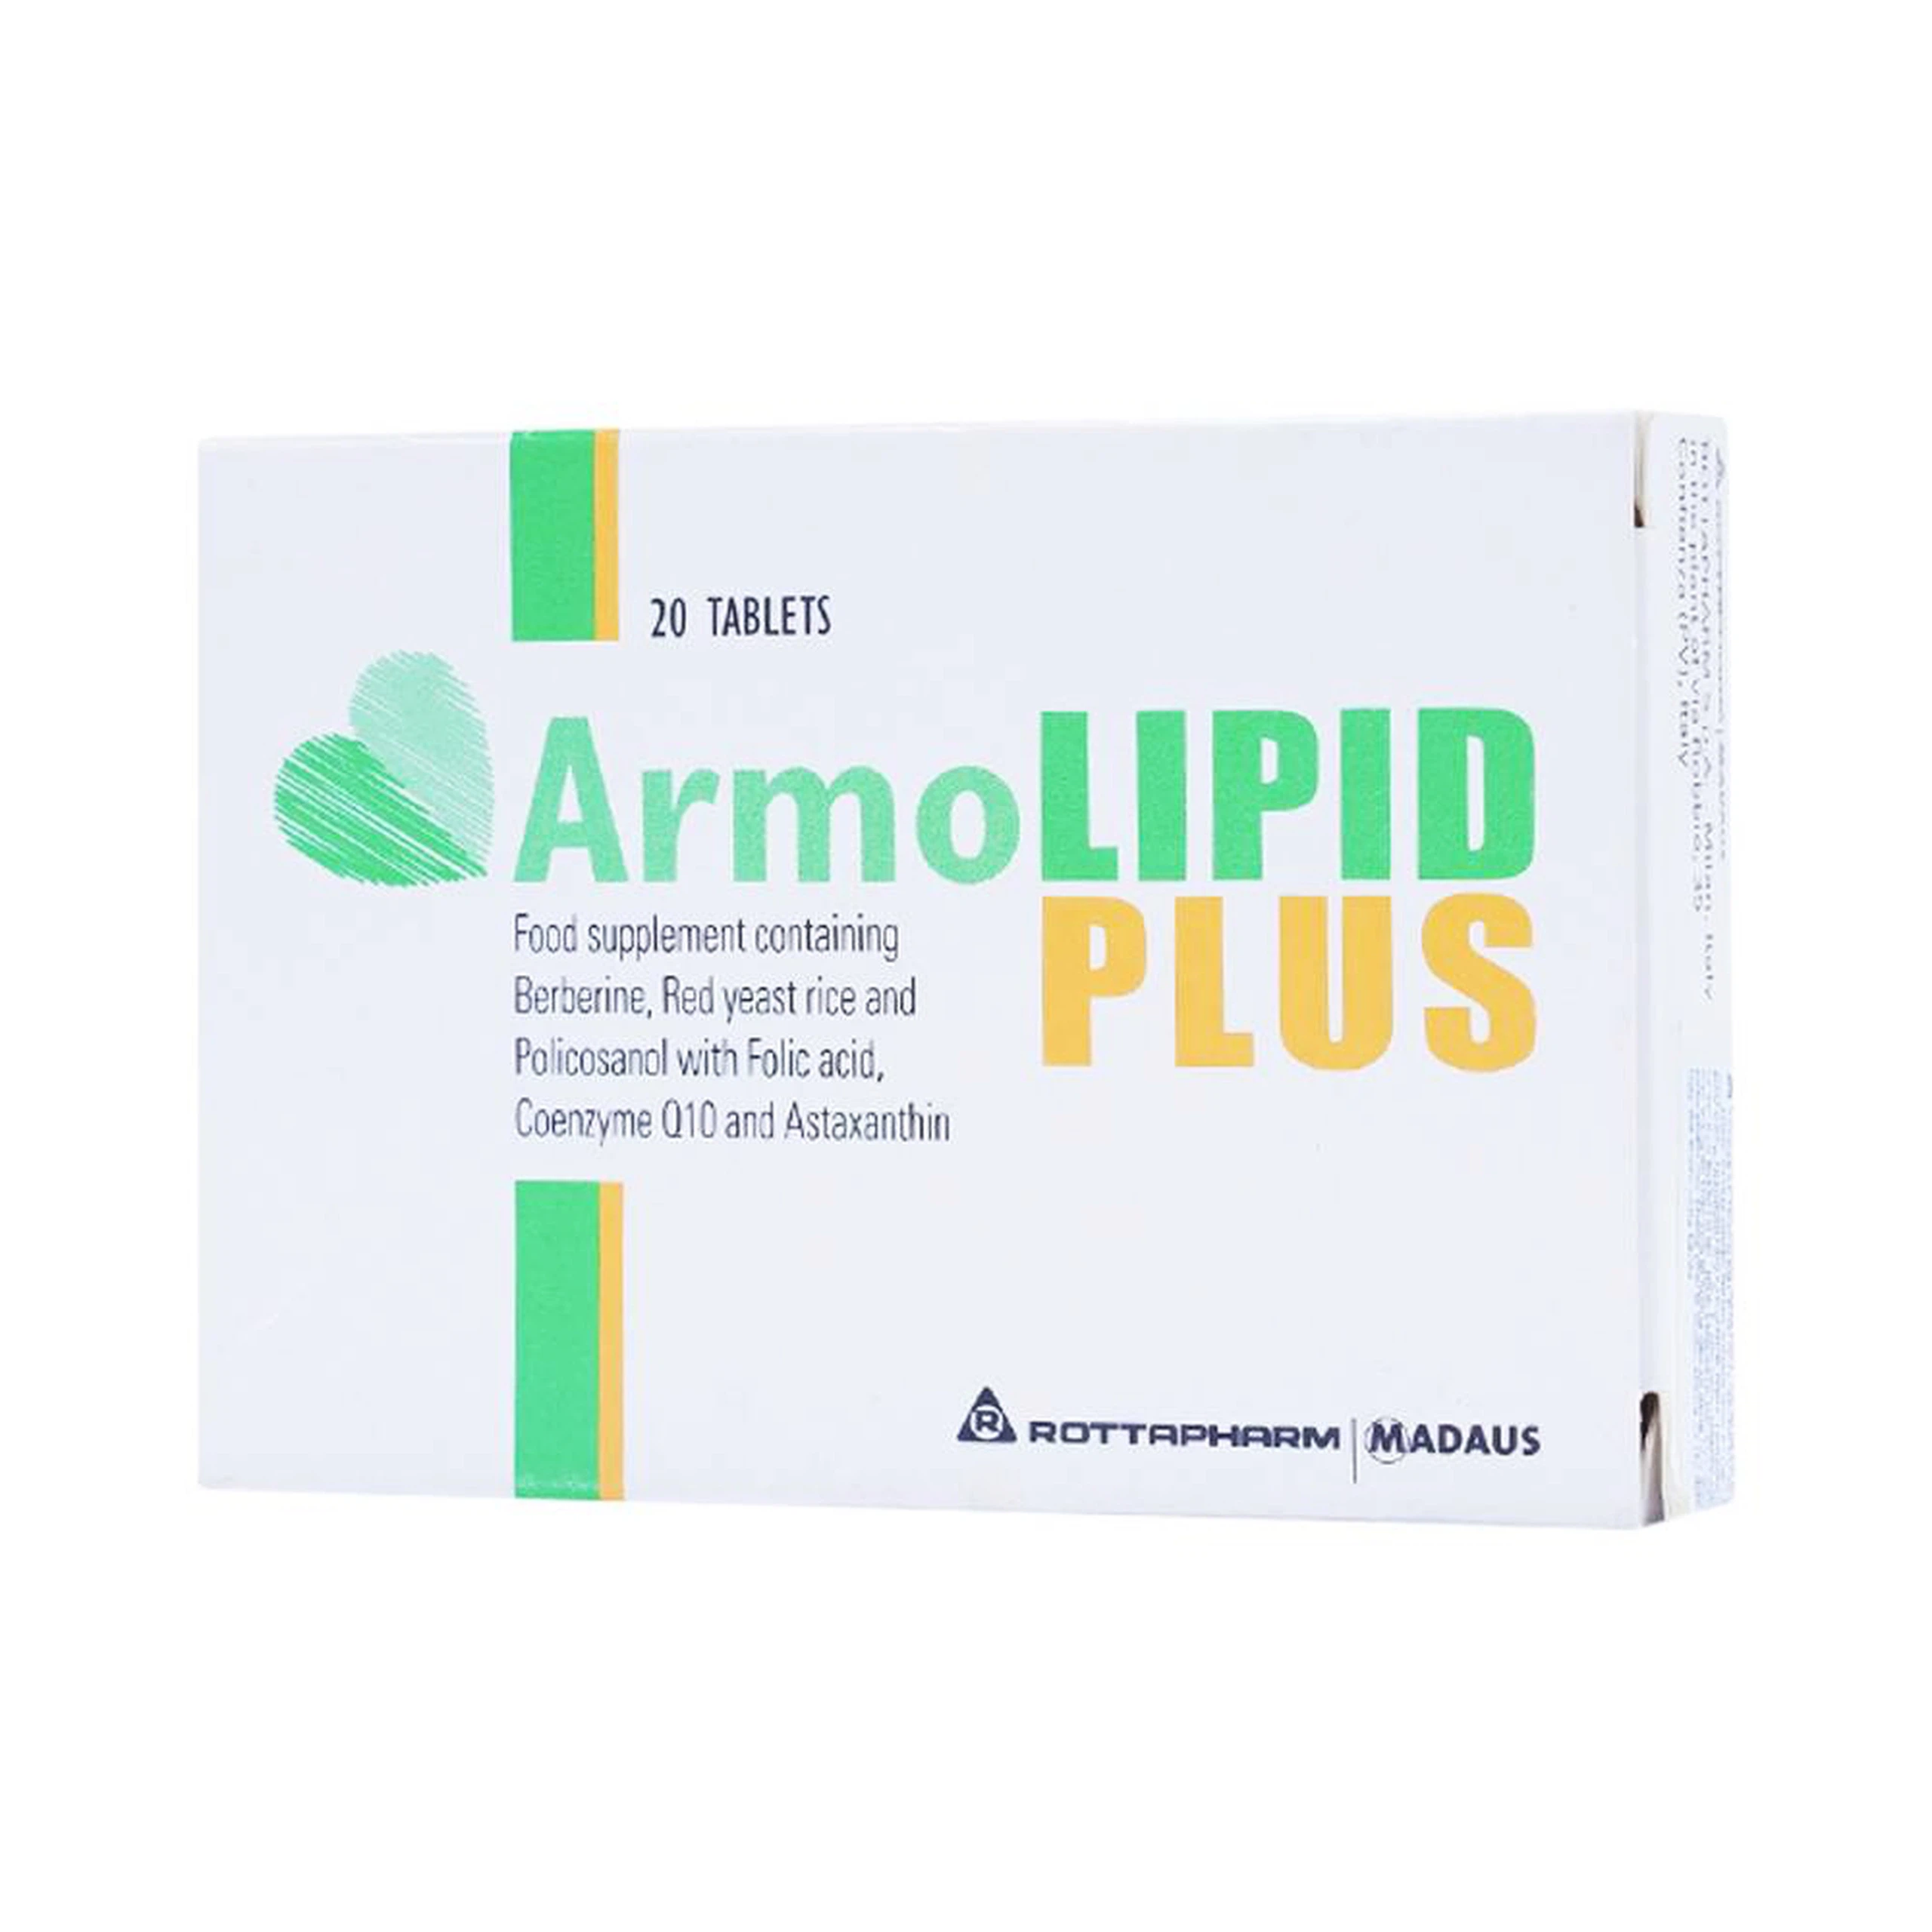 Viên uống ArmoLipid Plus Rottapharm giảm cholesterol, triglycerid trong máu (20 viên)